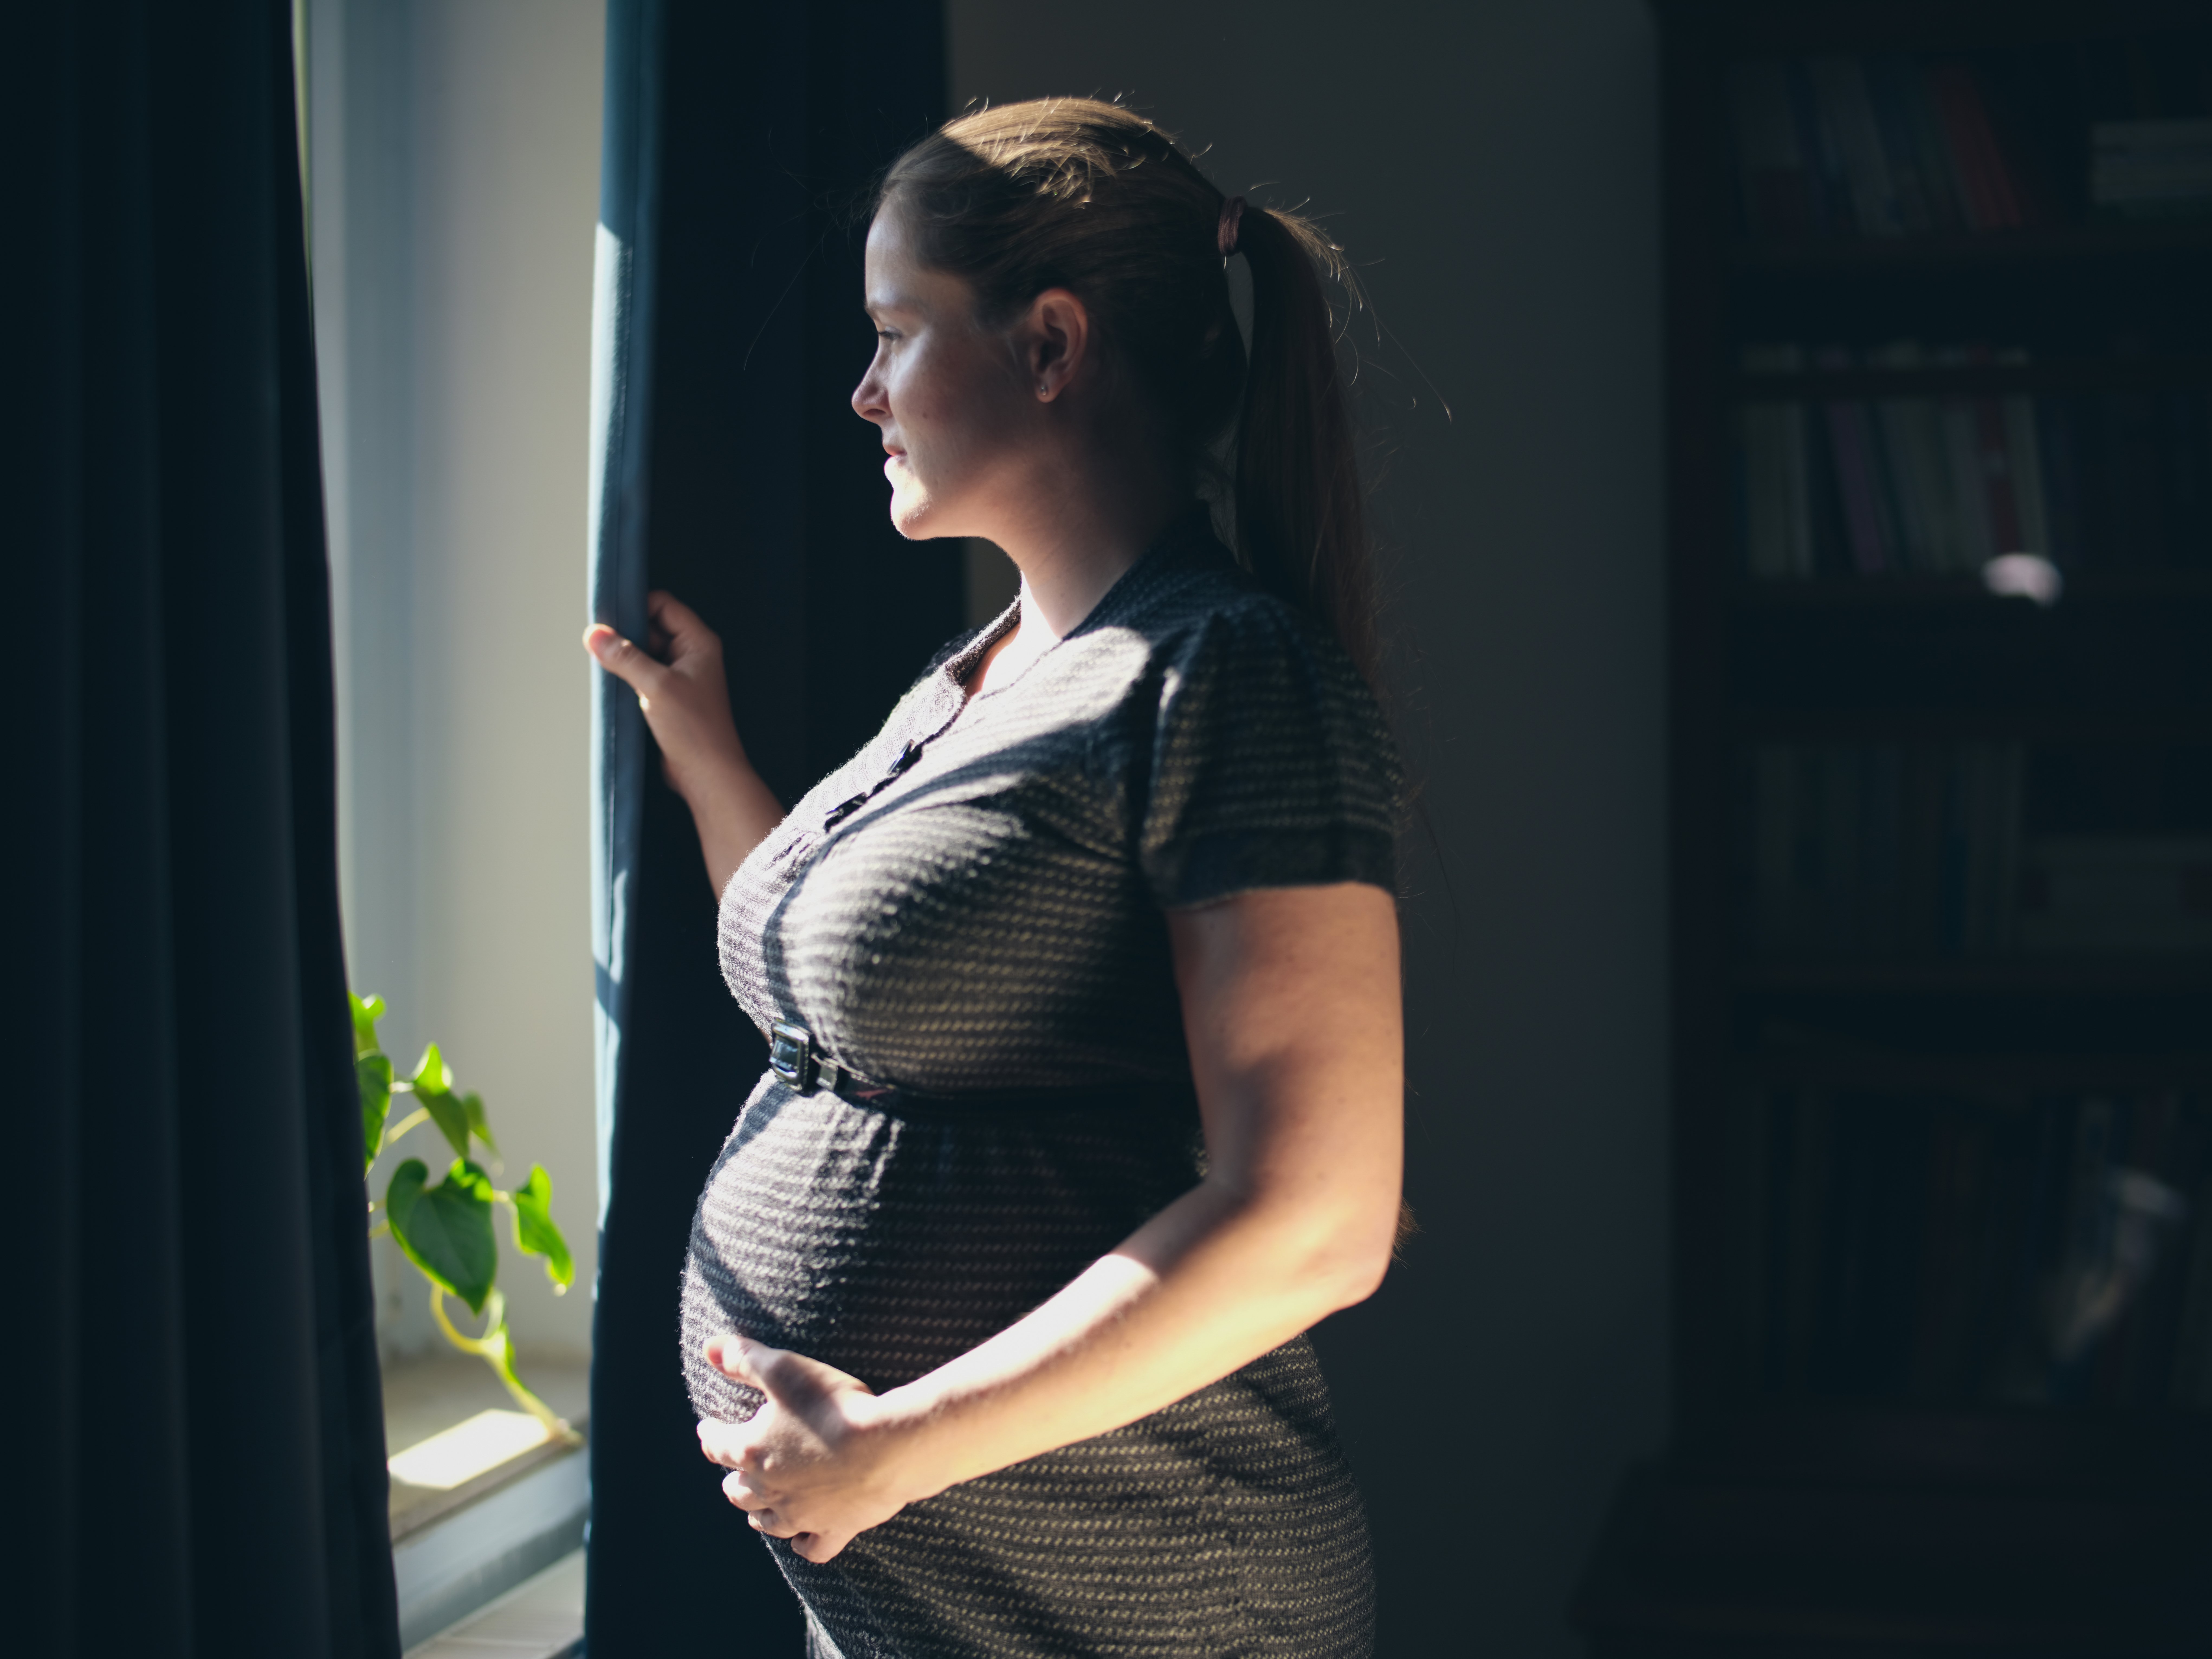 Eine schwangere Frau, die aus einem Fenster schaut | Quelle: Shutterstock